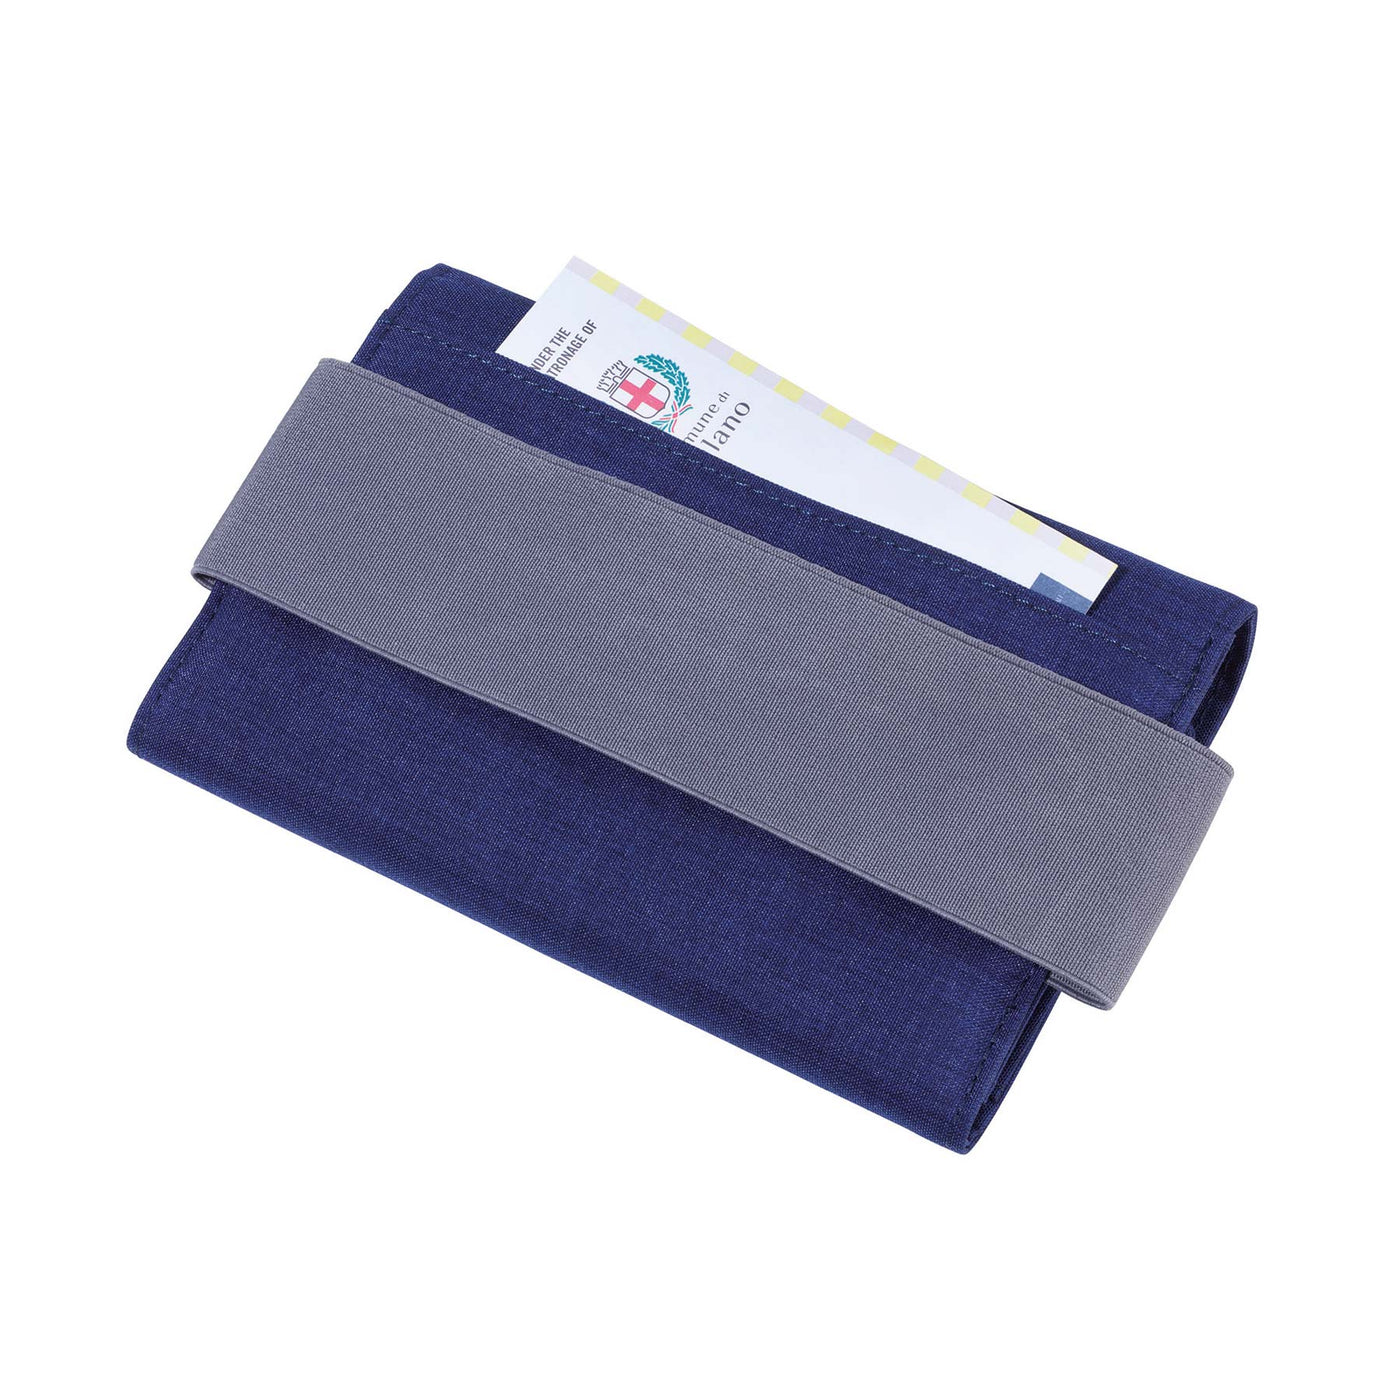 Troika Notebook Wallet Organizer Blue